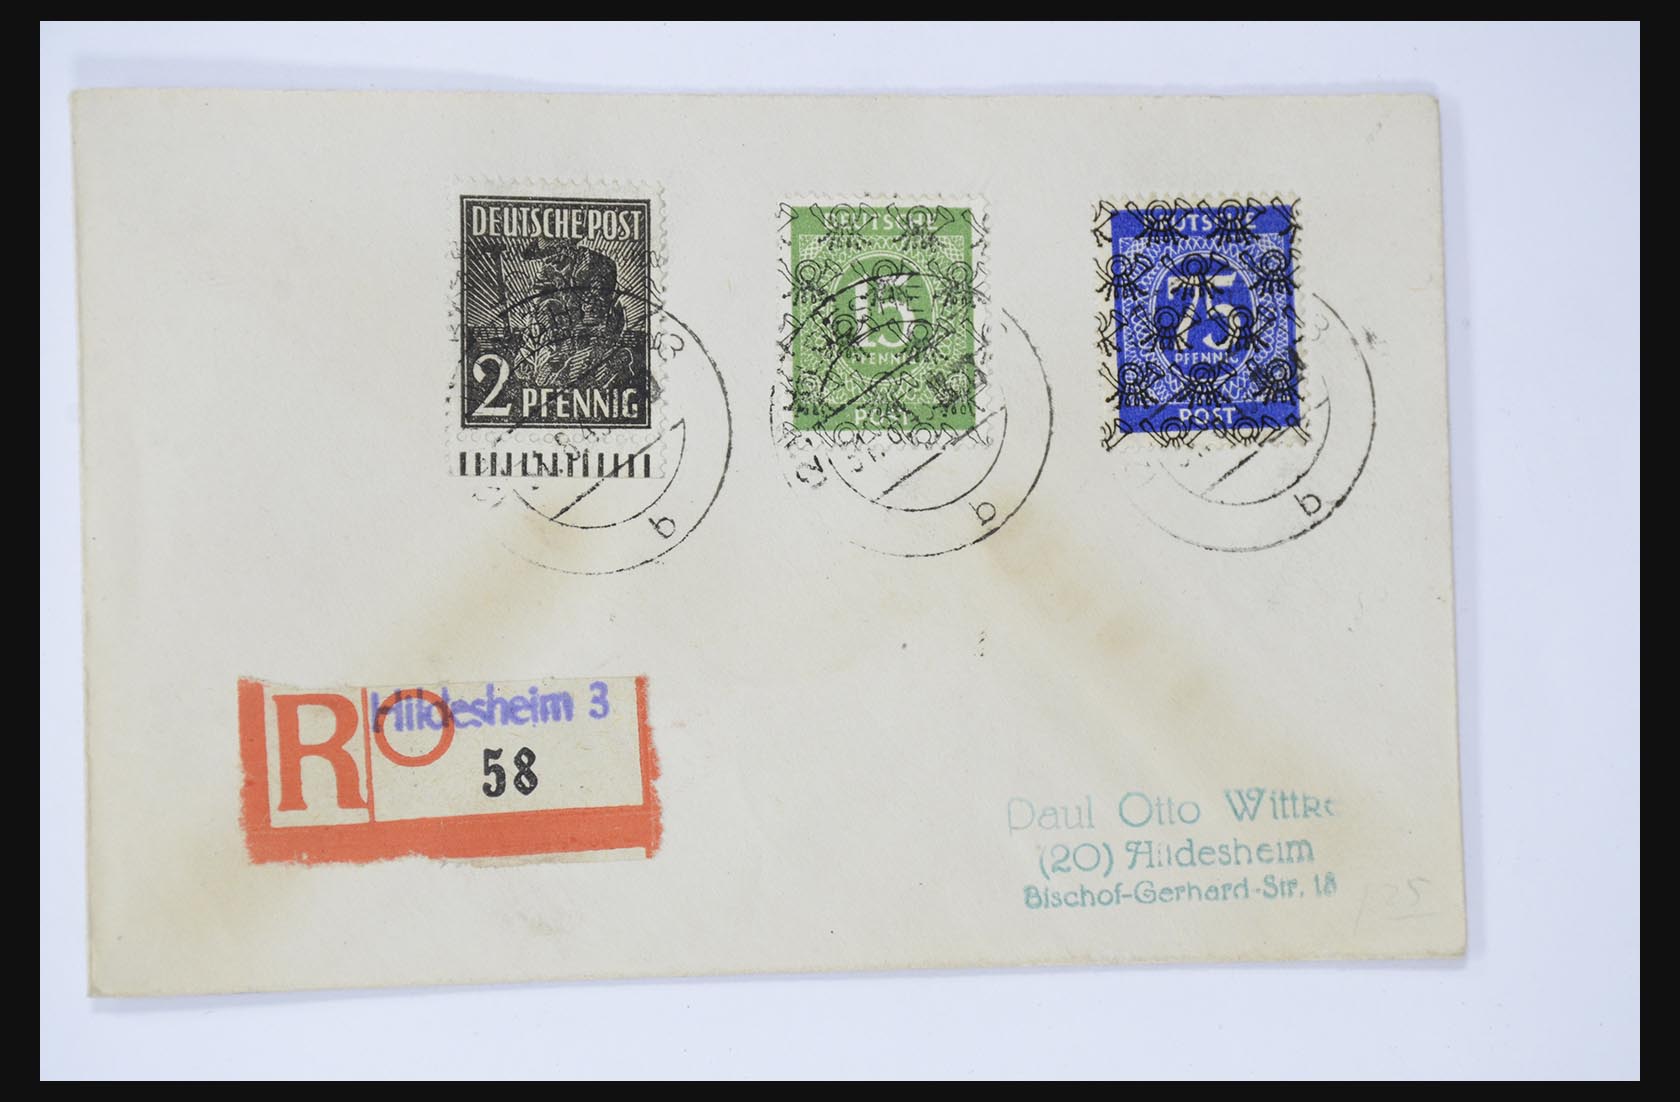 31581 043 - 31581 Duitsland brieven en FDC's 1945-1981.